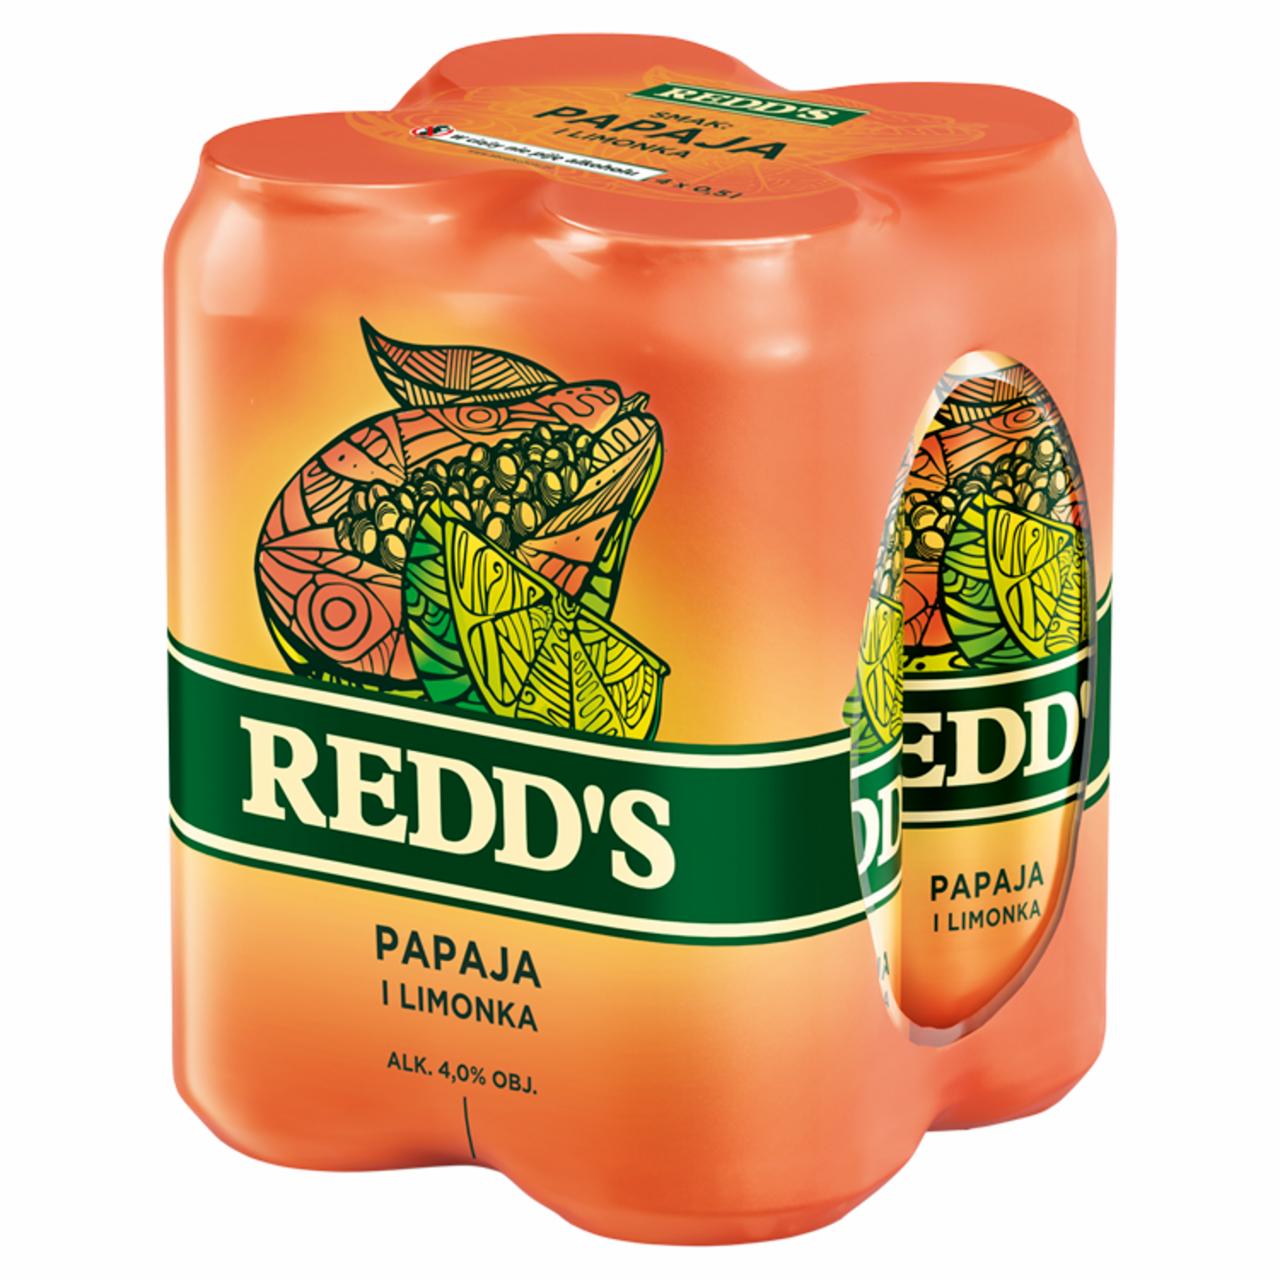 Zdjęcia - Redd's Piwo smak papaja i limonka 4 x 0,5 l